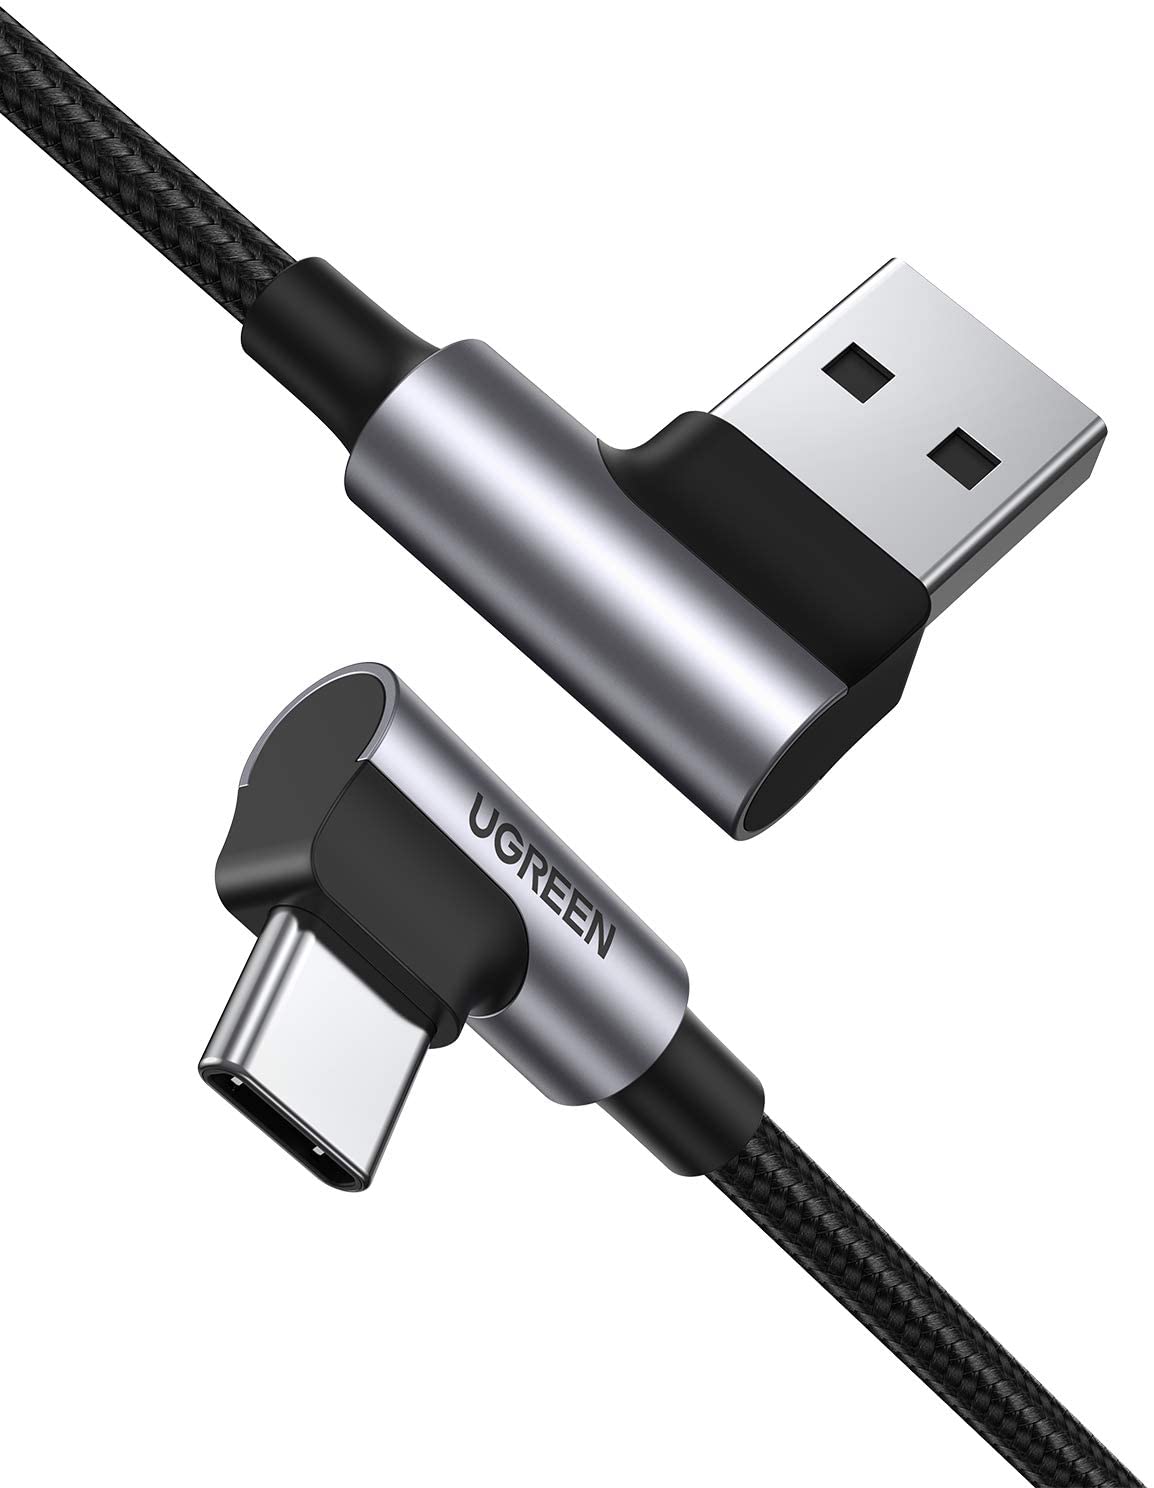  Кабель UGREEN US176 USB 2.0 - USB Type-C, угловой, оплетка, цвет -  серый/черный, длина -  1м